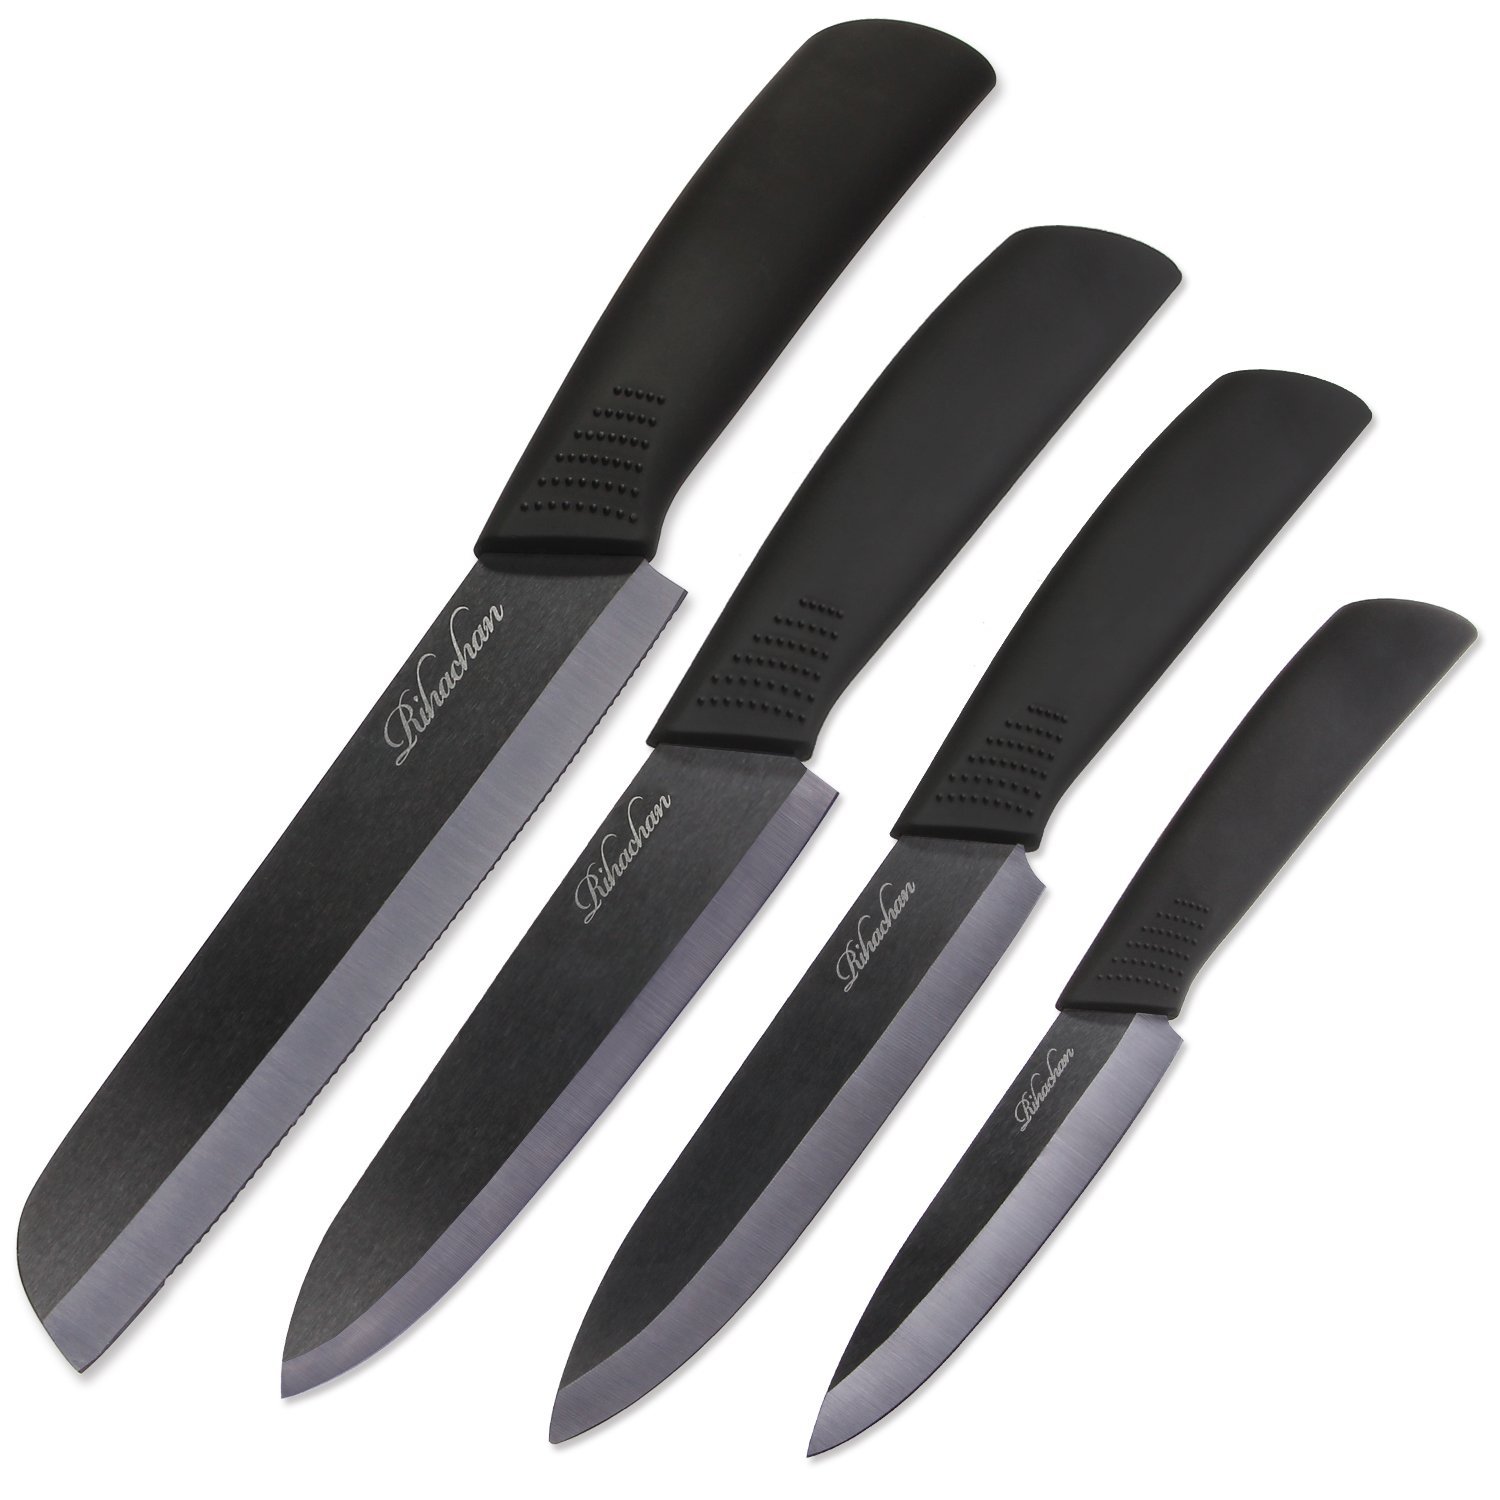 Недорогие кухонные ножи. Oliver & Kline best Ceramic Knife Set. Керамические ножи Zeidan 3. Керамический нож Ceramic Knife. Вильямс Оливер набор ножей.